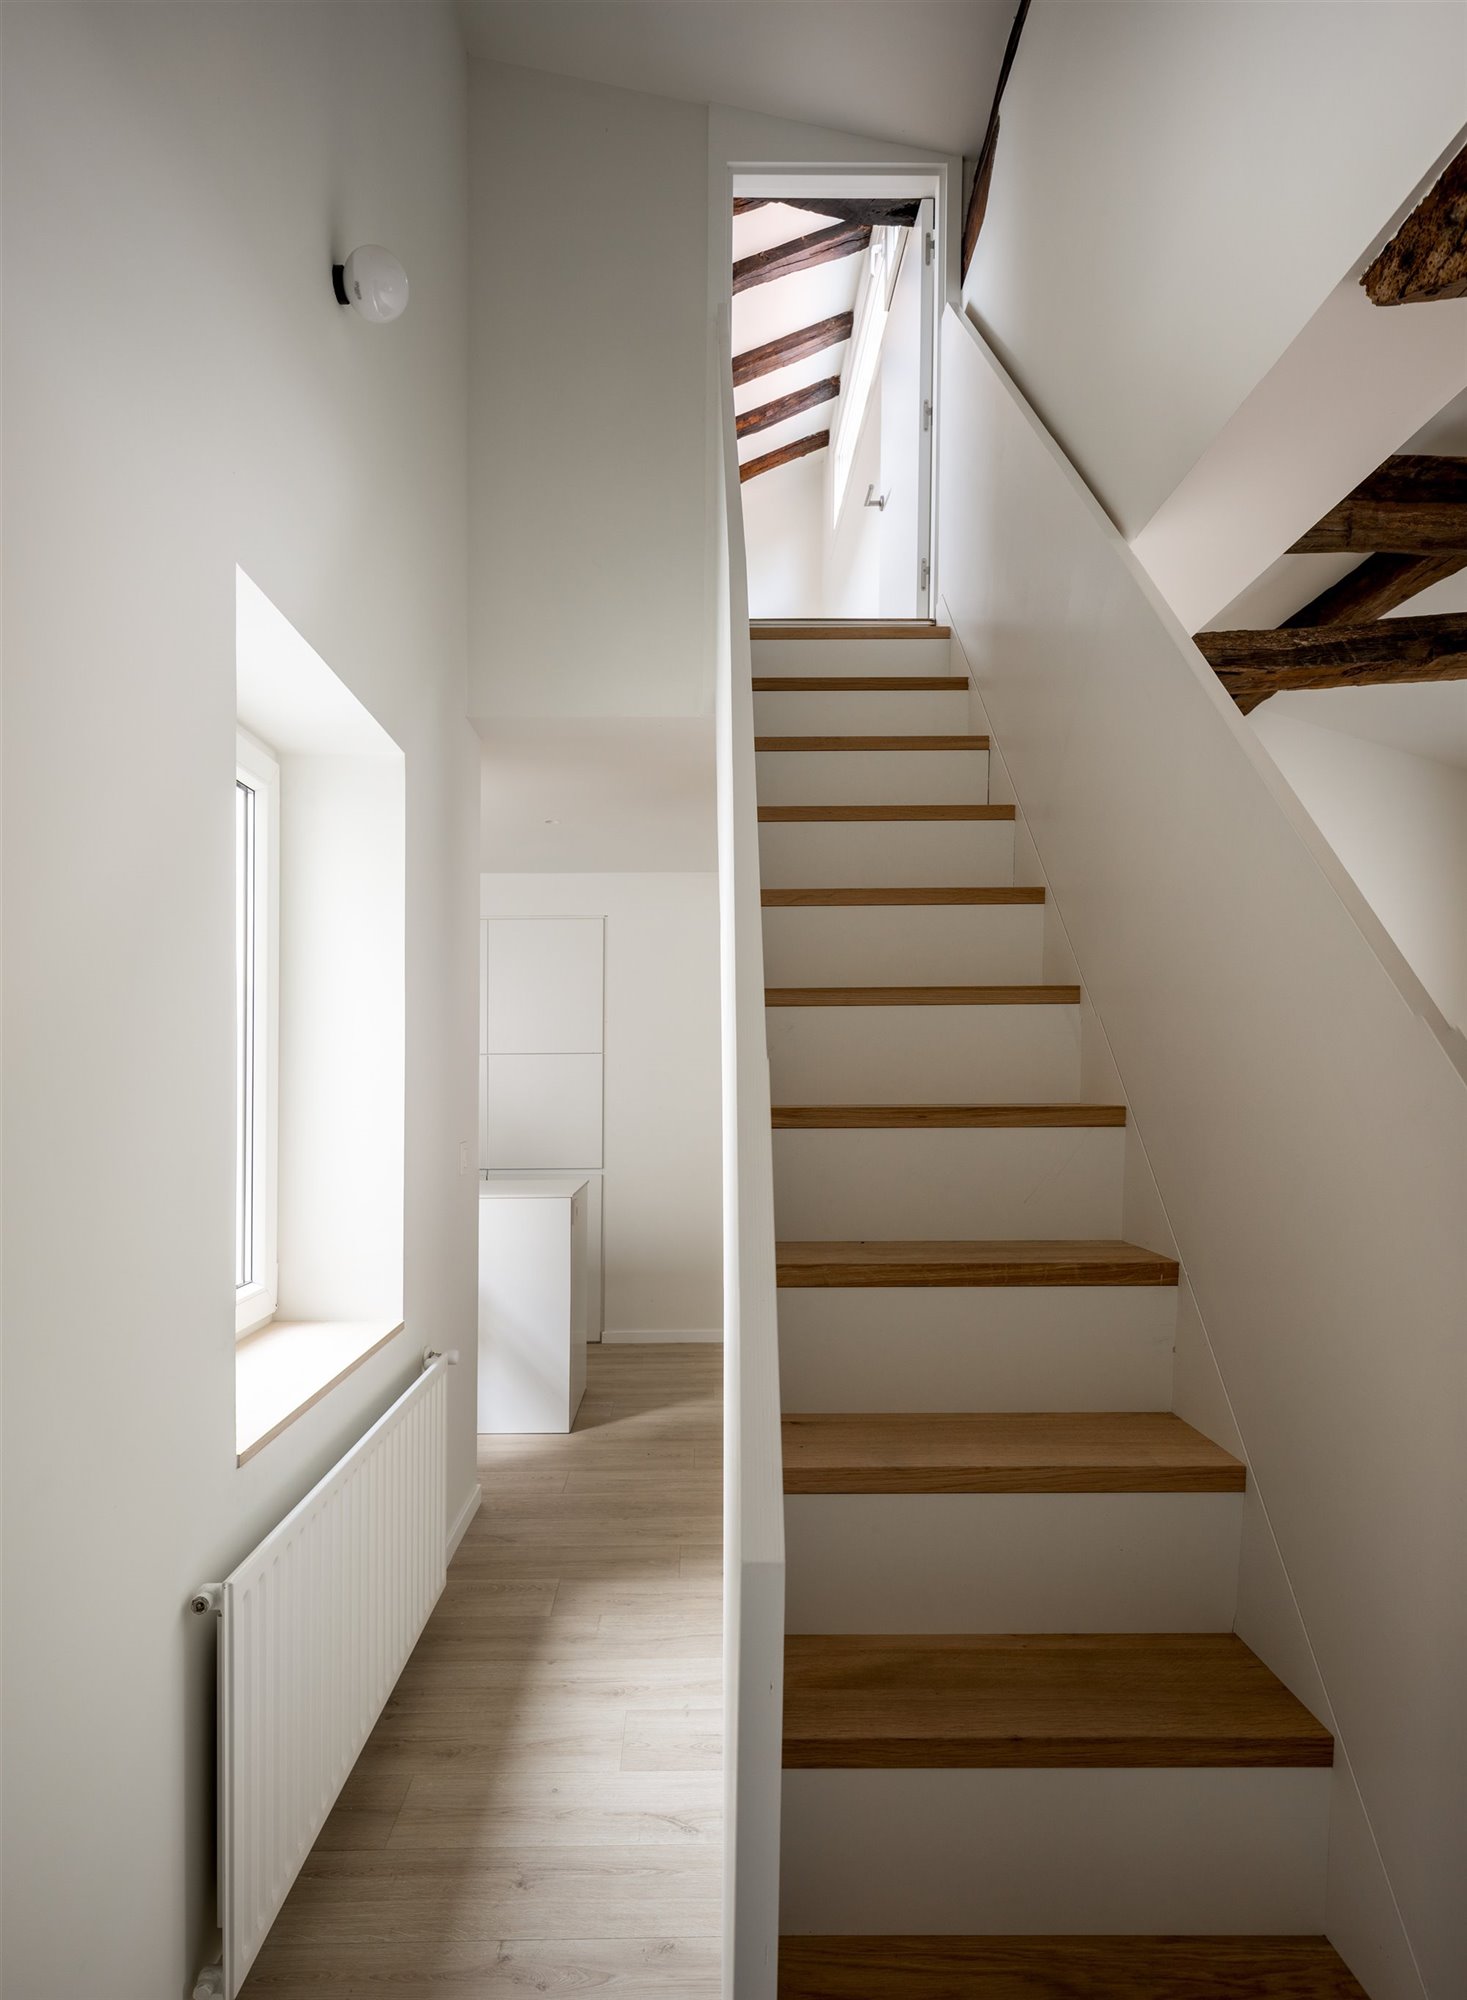 Escaleras con barandillas blancas y escalones de madera.